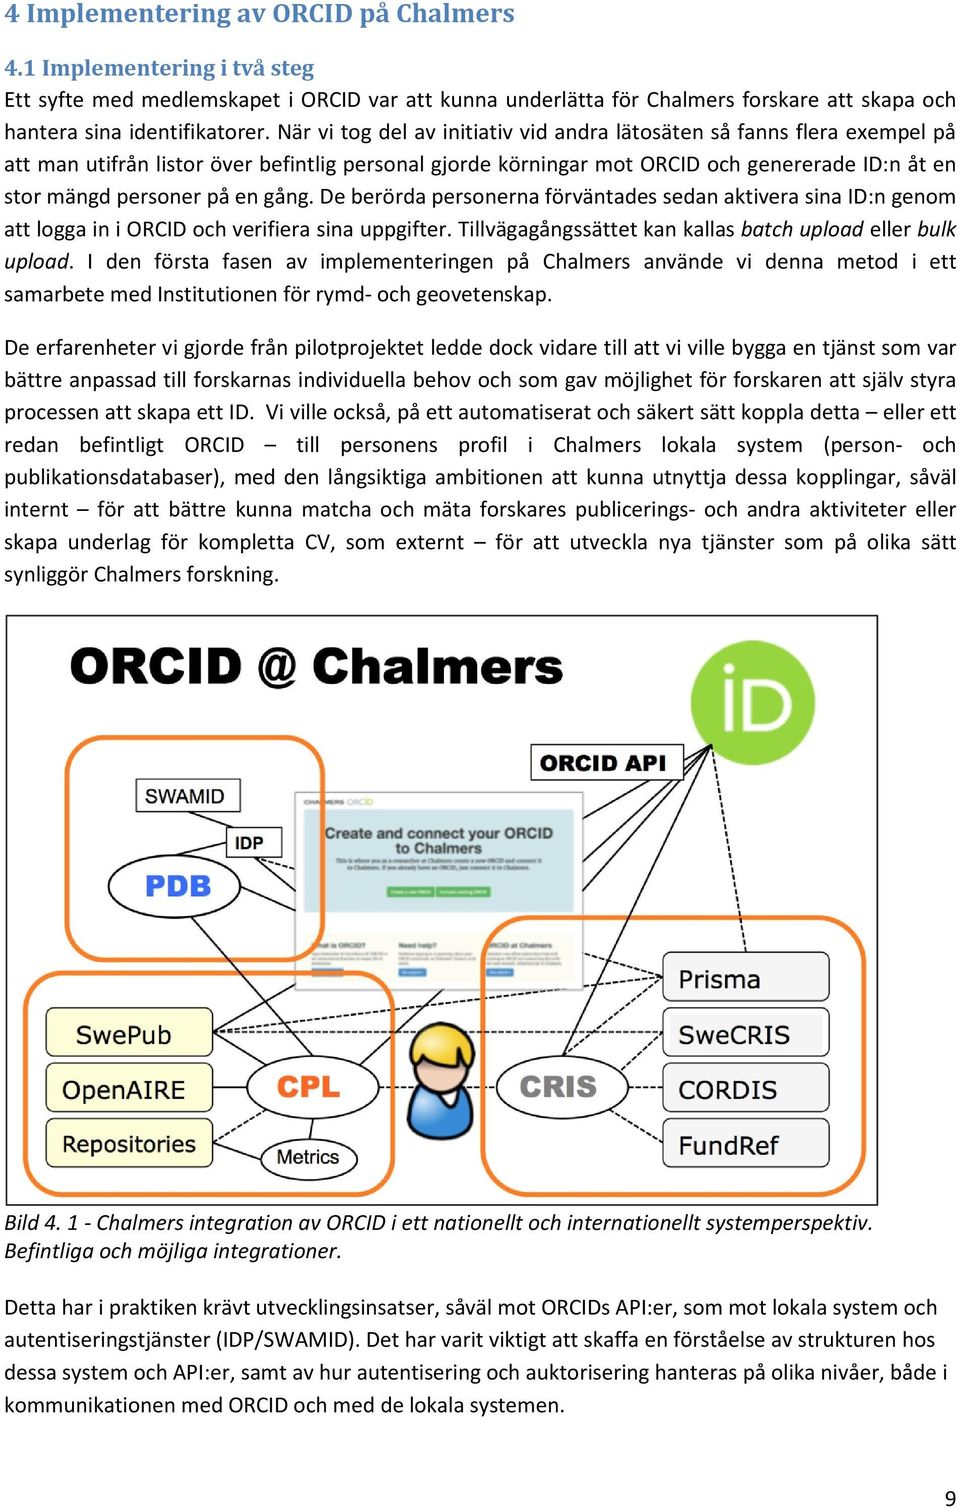 gång. De berörda personerna förväntades sedan aktivera sina ID:n genom att logga in i ORCID och verifiera sina uppgifter. Tillvägagångssättet kan kallas batch upload eller bulk upload.